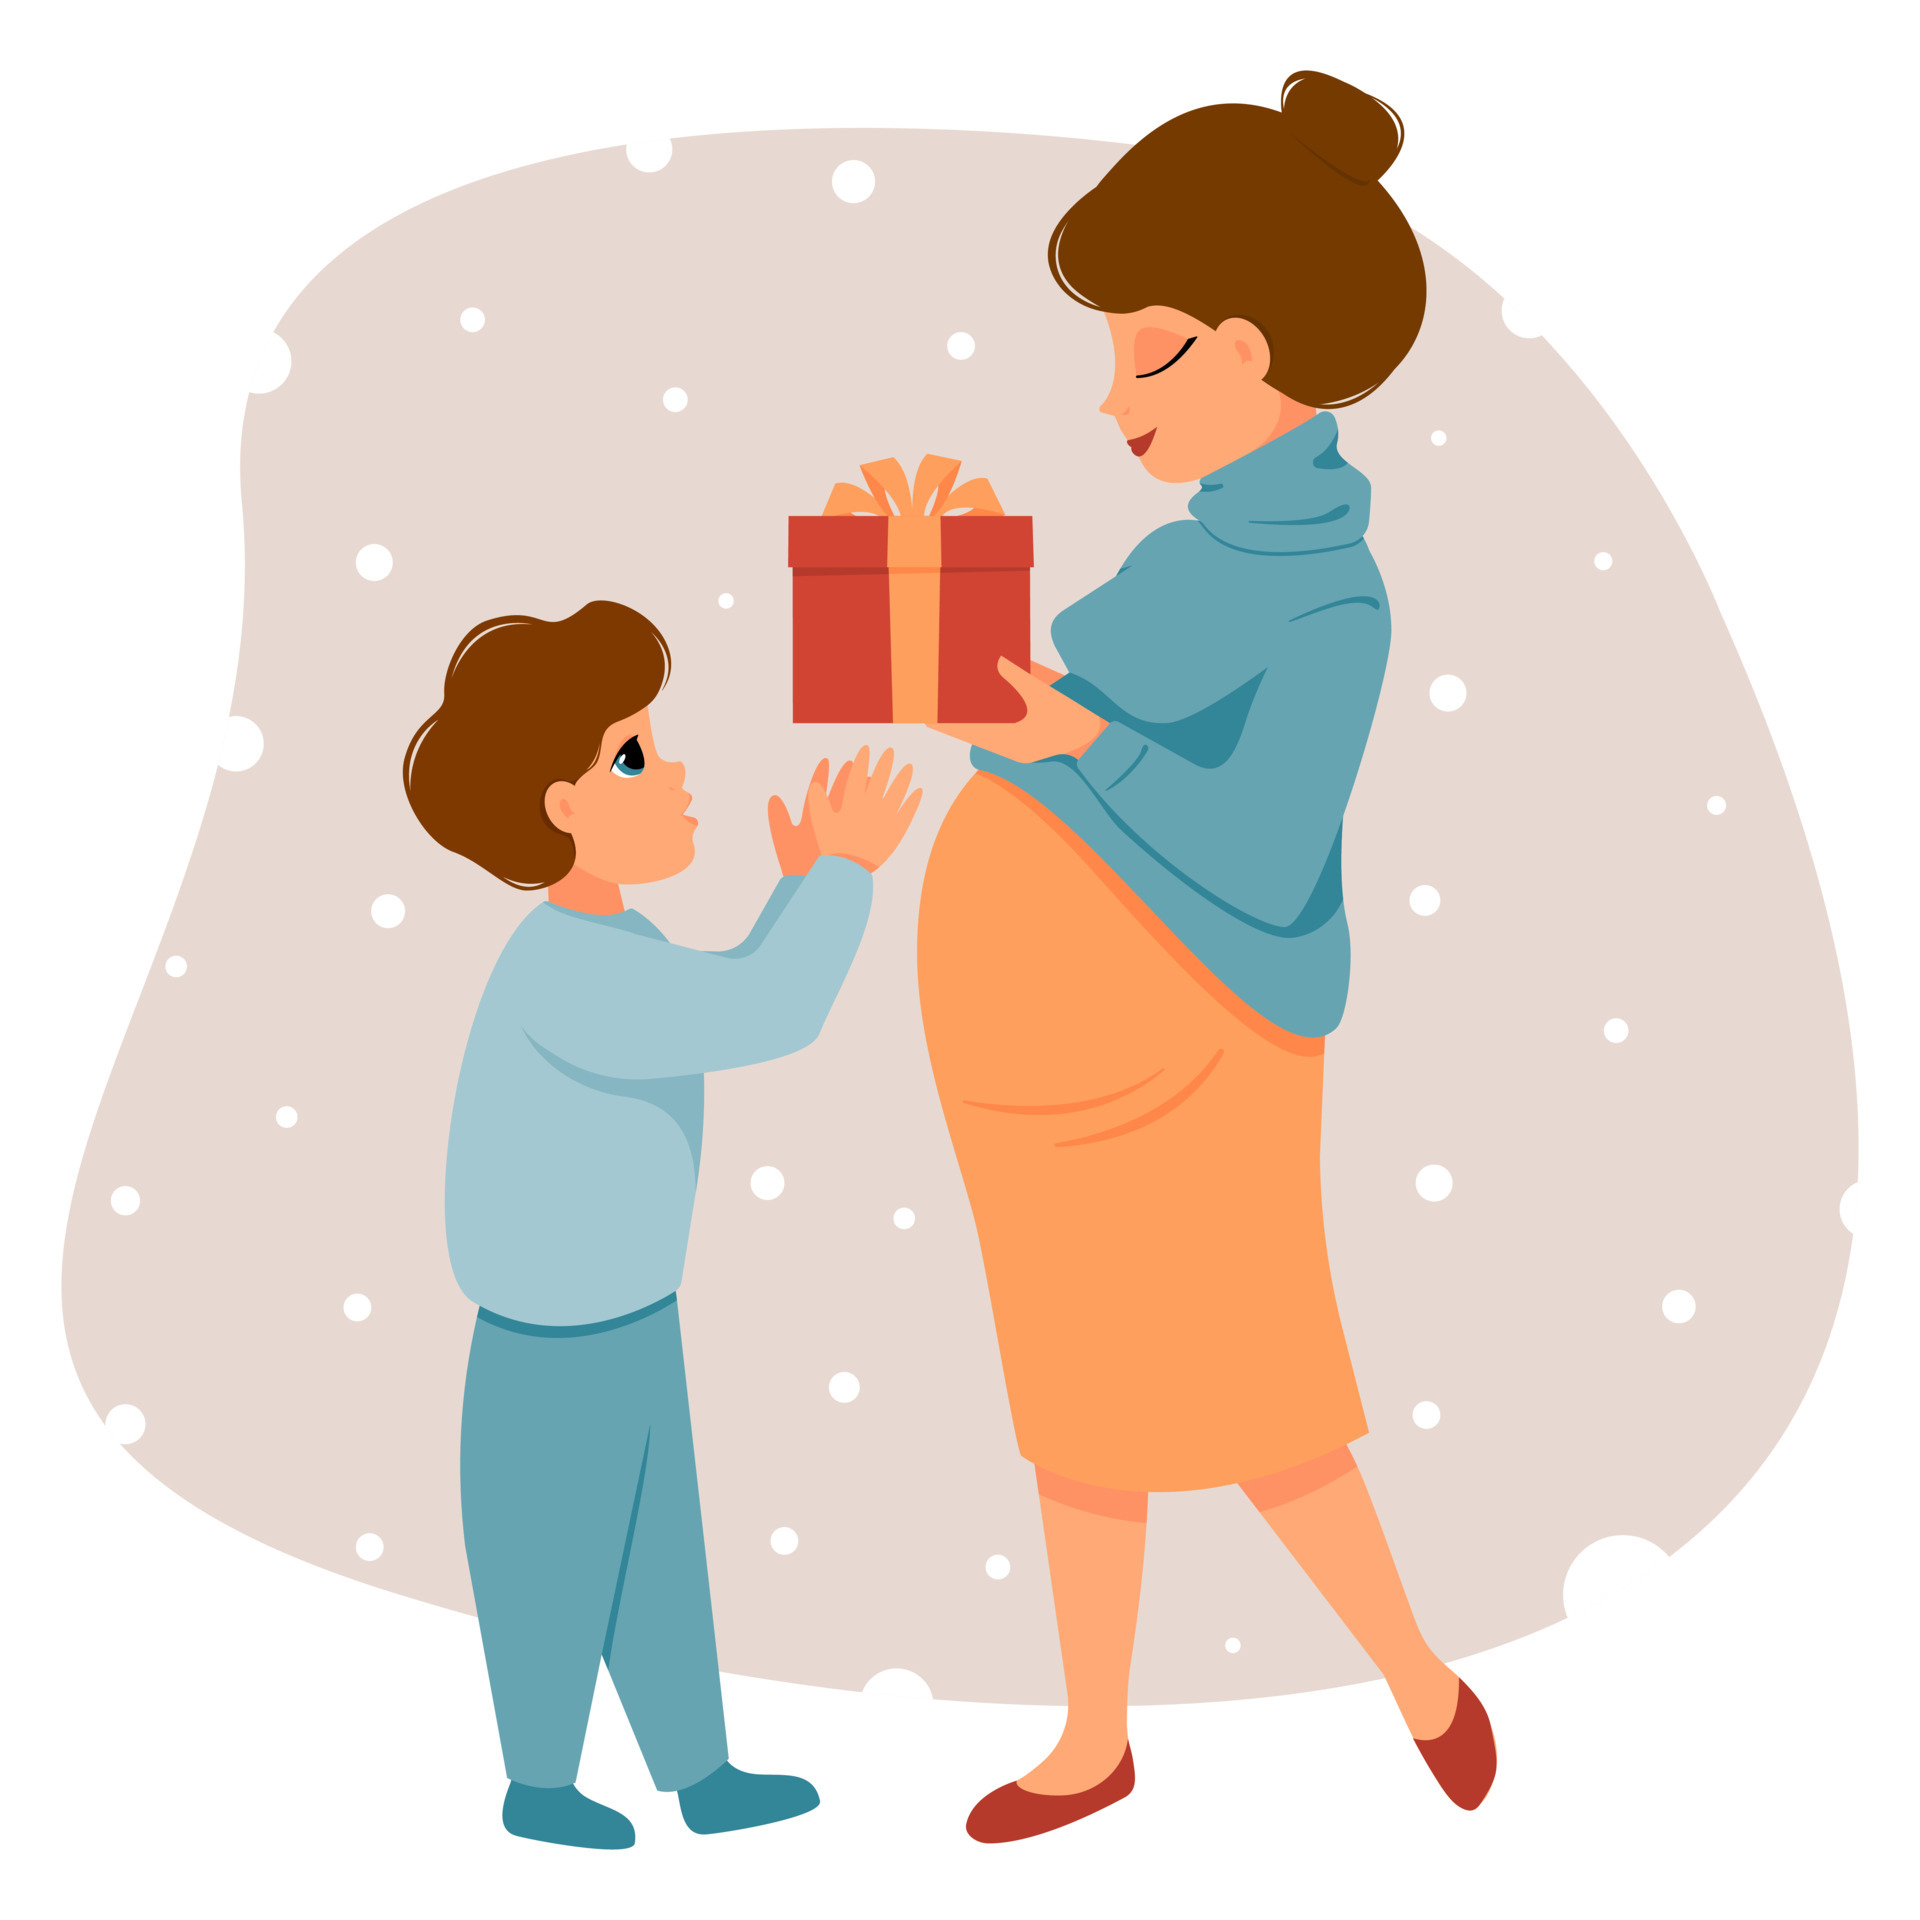 il figlio fa il regalo di natale alla mamma. la donna incinta fa un regalo  al bambino. concetto di festeggiare il nuovo anno, compleanno.  illustrazione vettoriale di caratteri in stile piatto.. 6736150